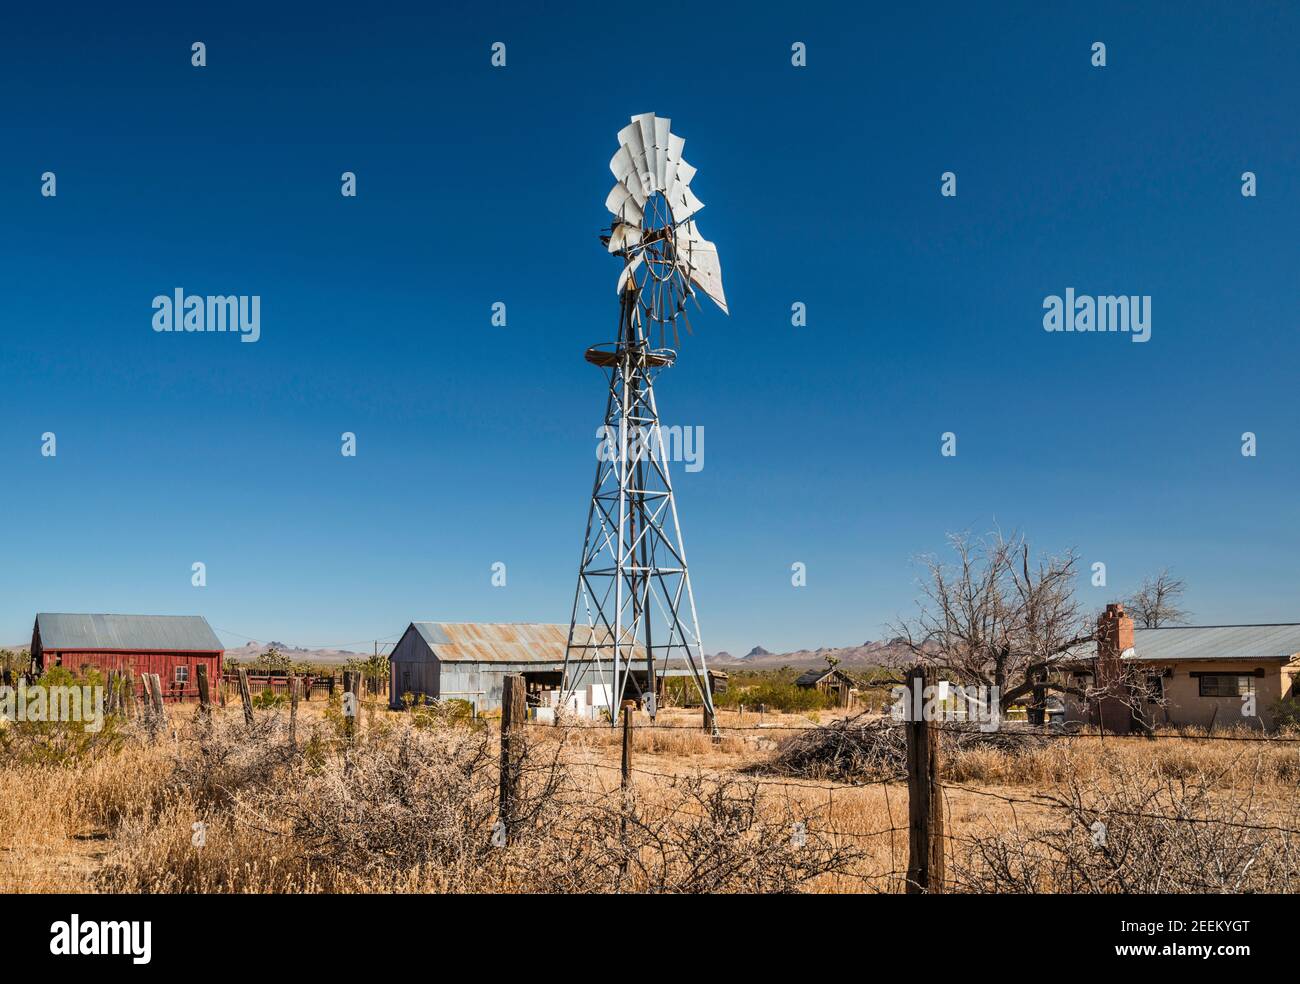 Pompe à eau de type Aermotor au ranch du site de Lanfair, Lanfair Valley, réserve nationale de Mojave, Californie, États-Unis Banque D'Images